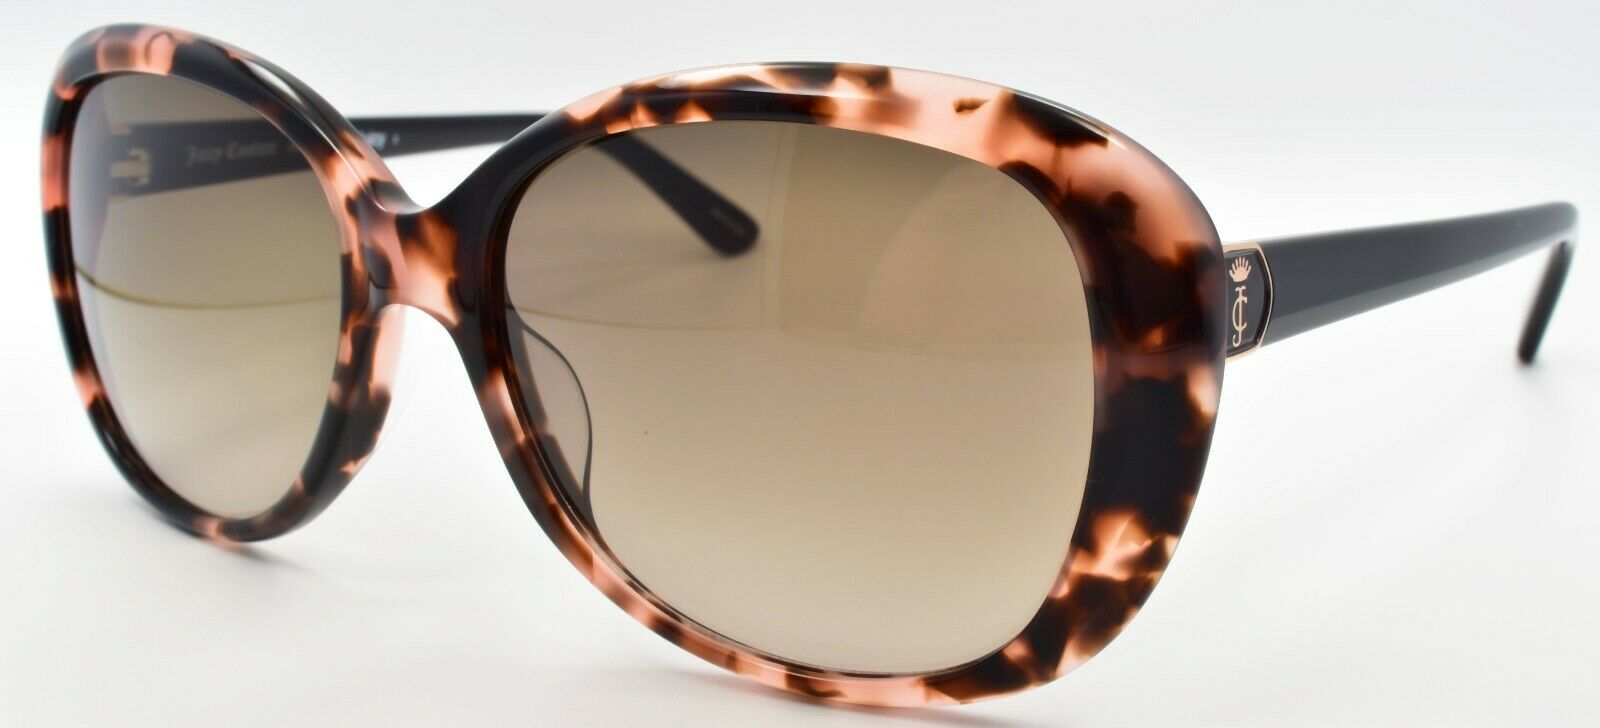 1-Juicy Couture JU598/S 497HA Women's Sunglasses Pink Havana / Brown Gradient-716736061641-IKSpecs